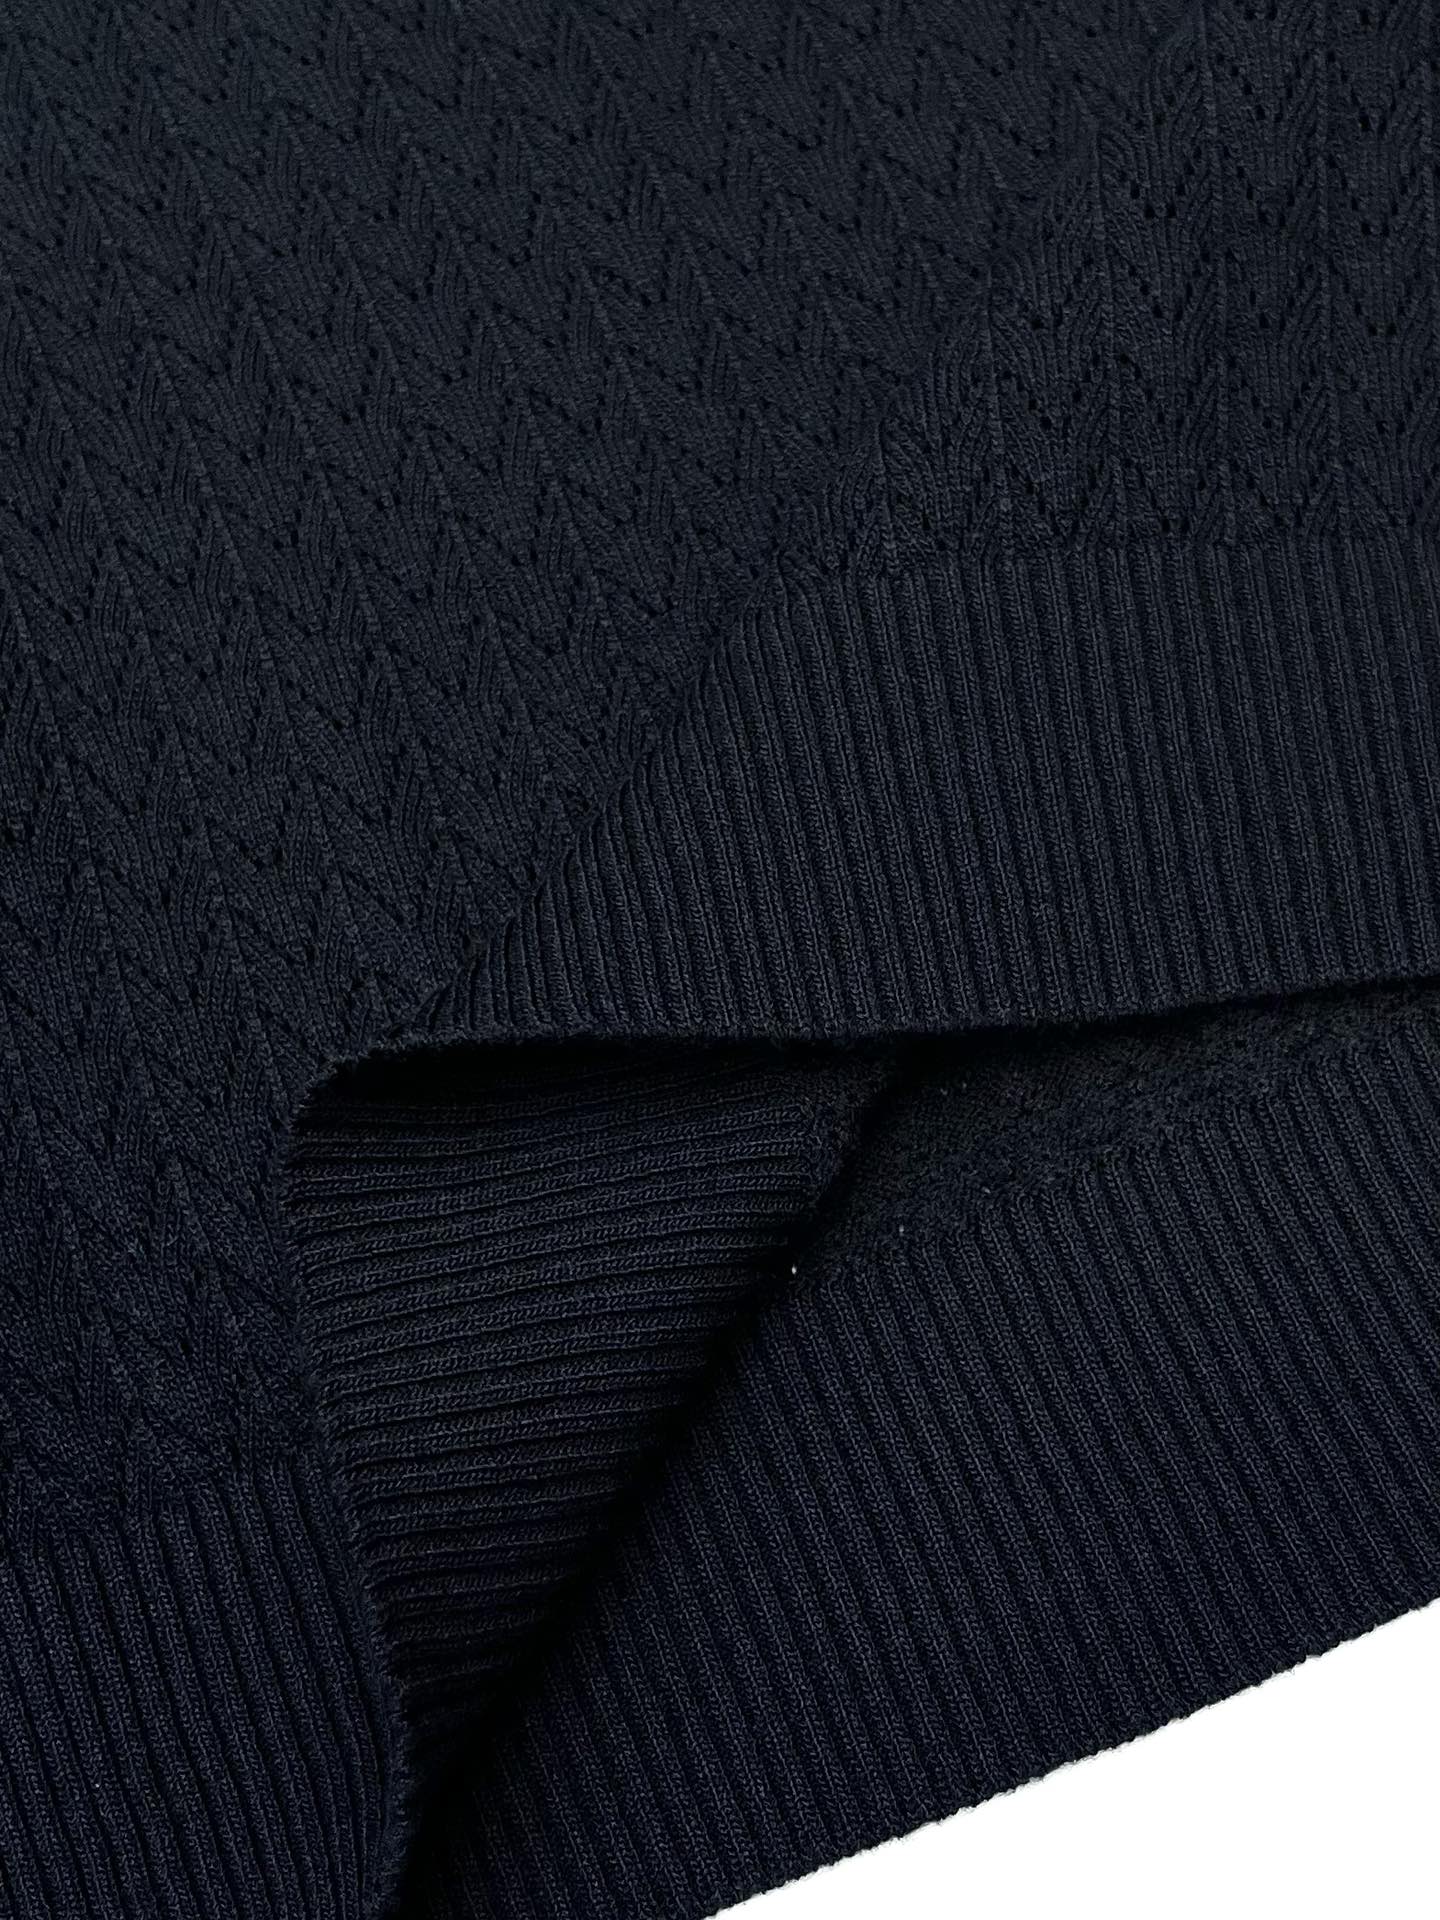 BBR*24ss新款毛衣针织短袖超经典设计简约没有任何多余累赘感衣橱不可缺少的一件百搭单品采用优质羊毛制